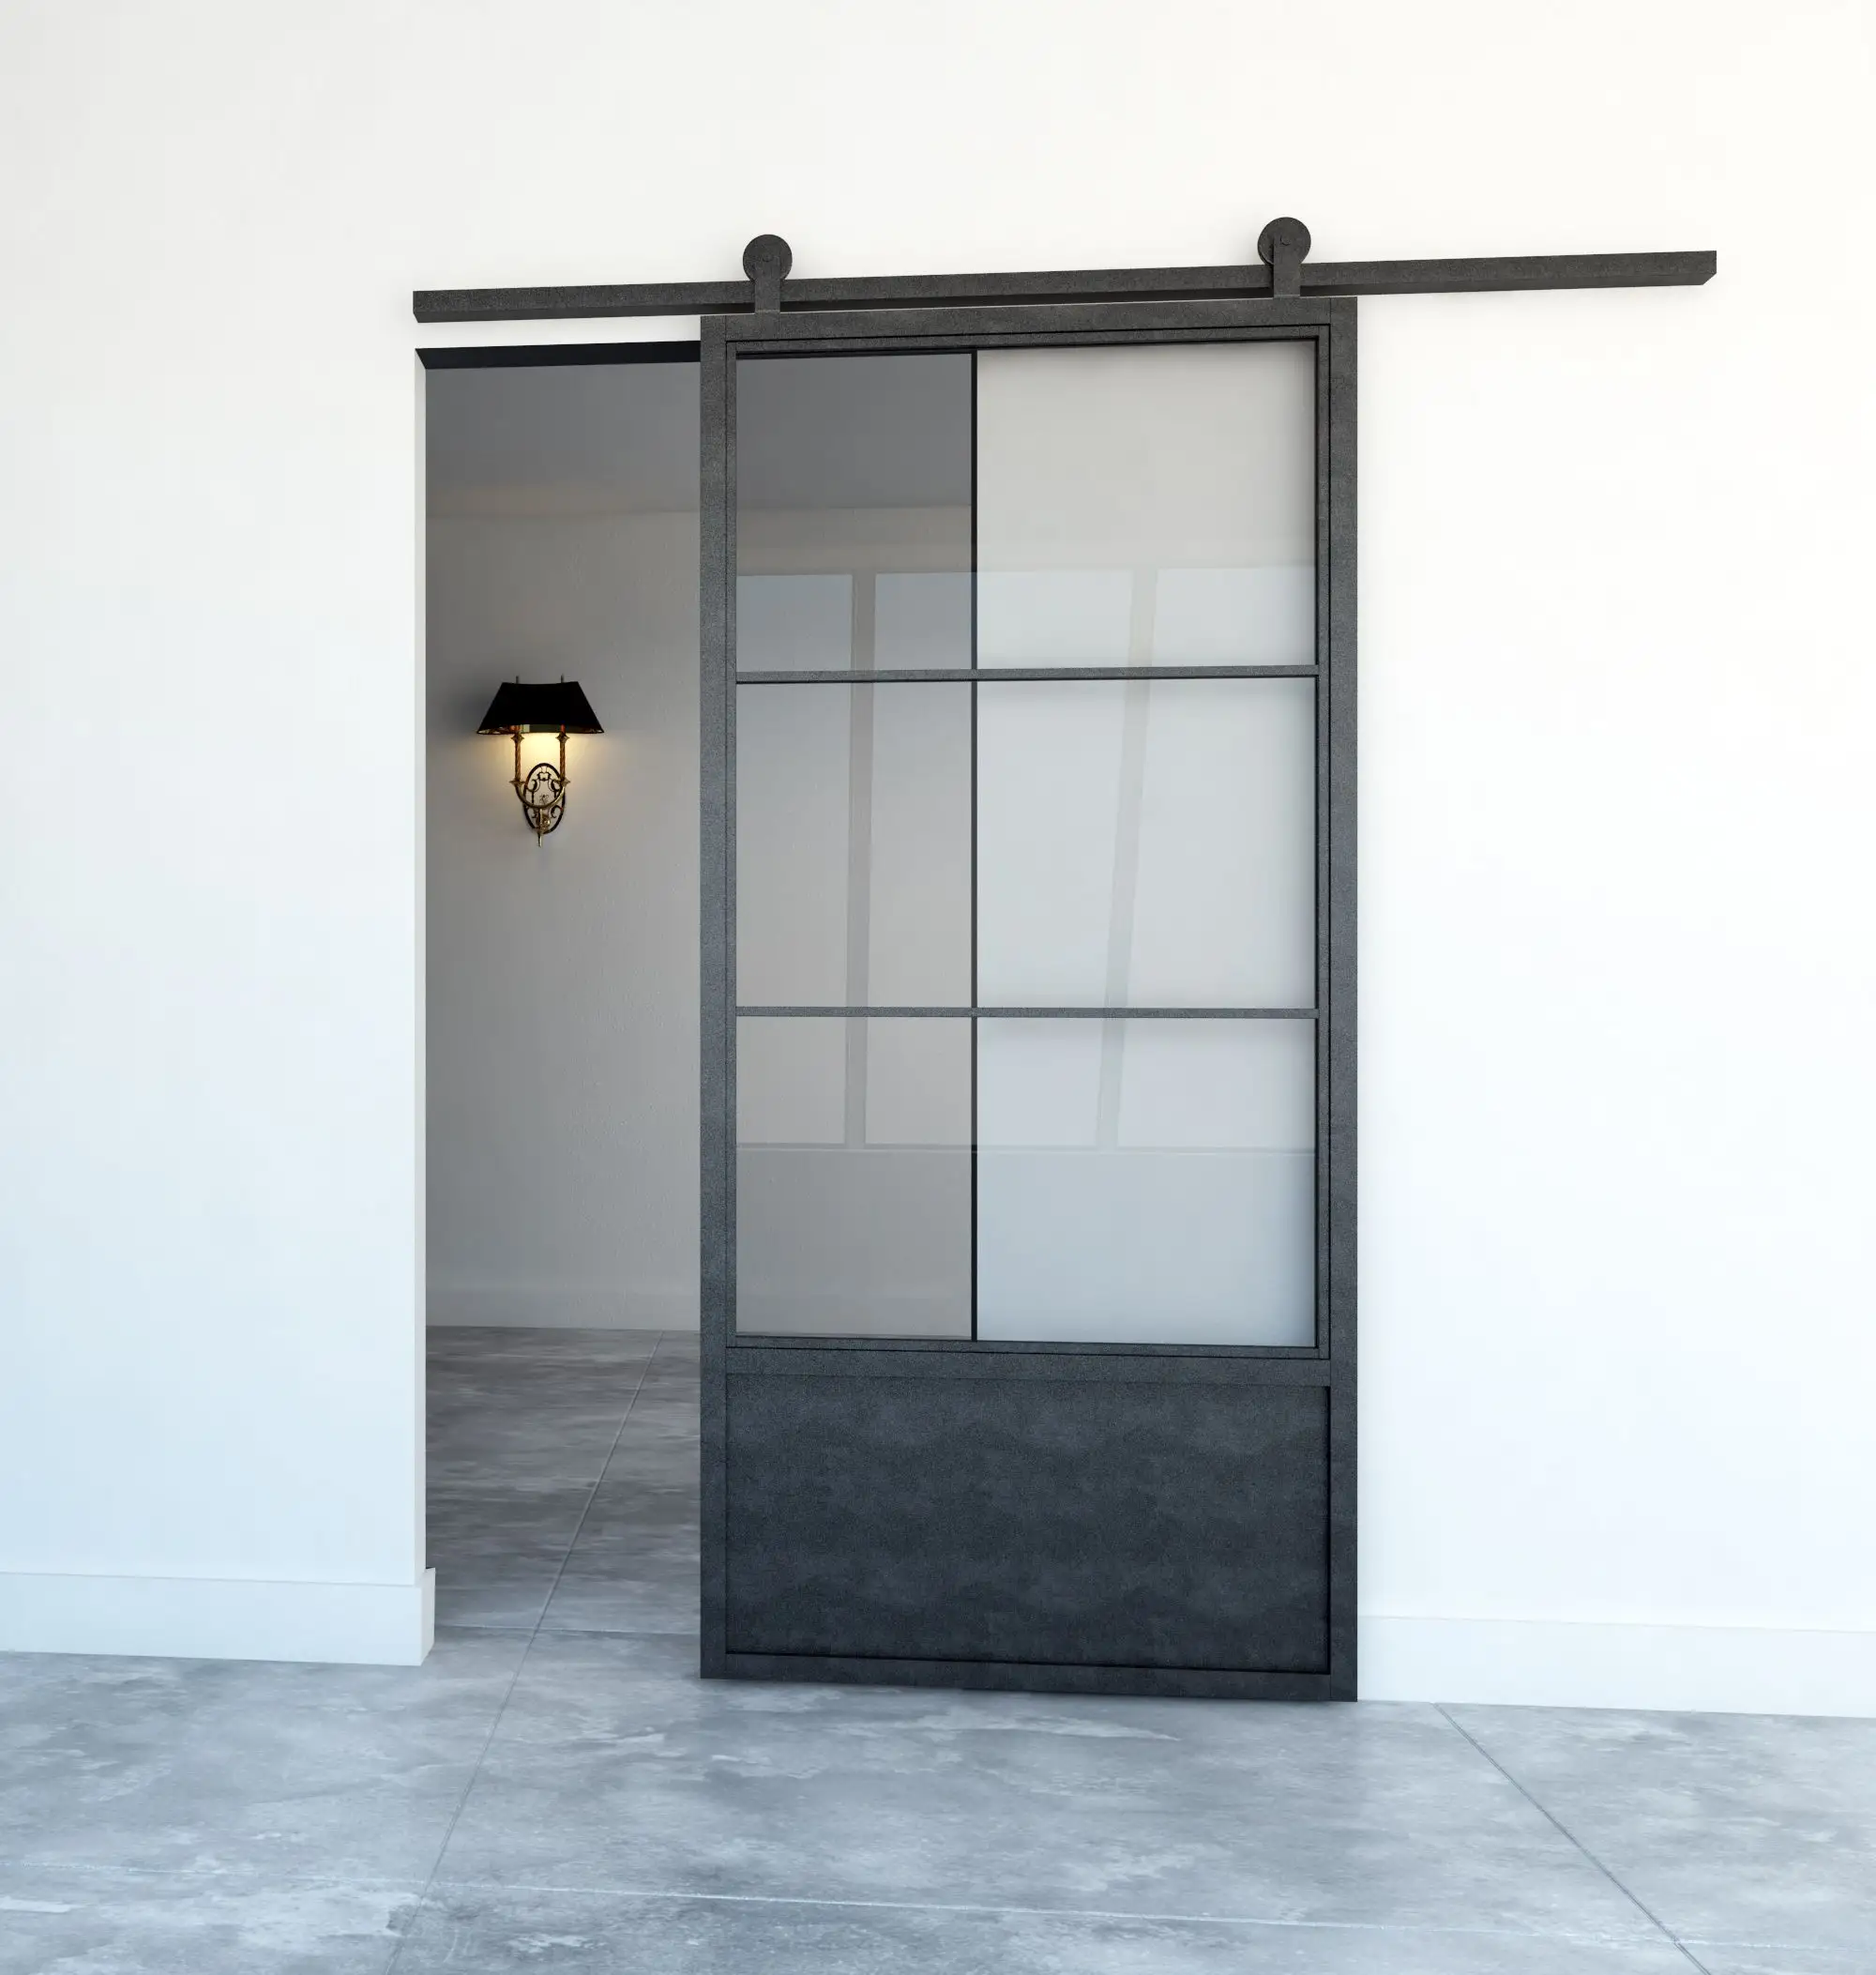 Desain Modern pintu kaca baja gaya gudang untuk dapur kaca antigores bening ganda kedap suara